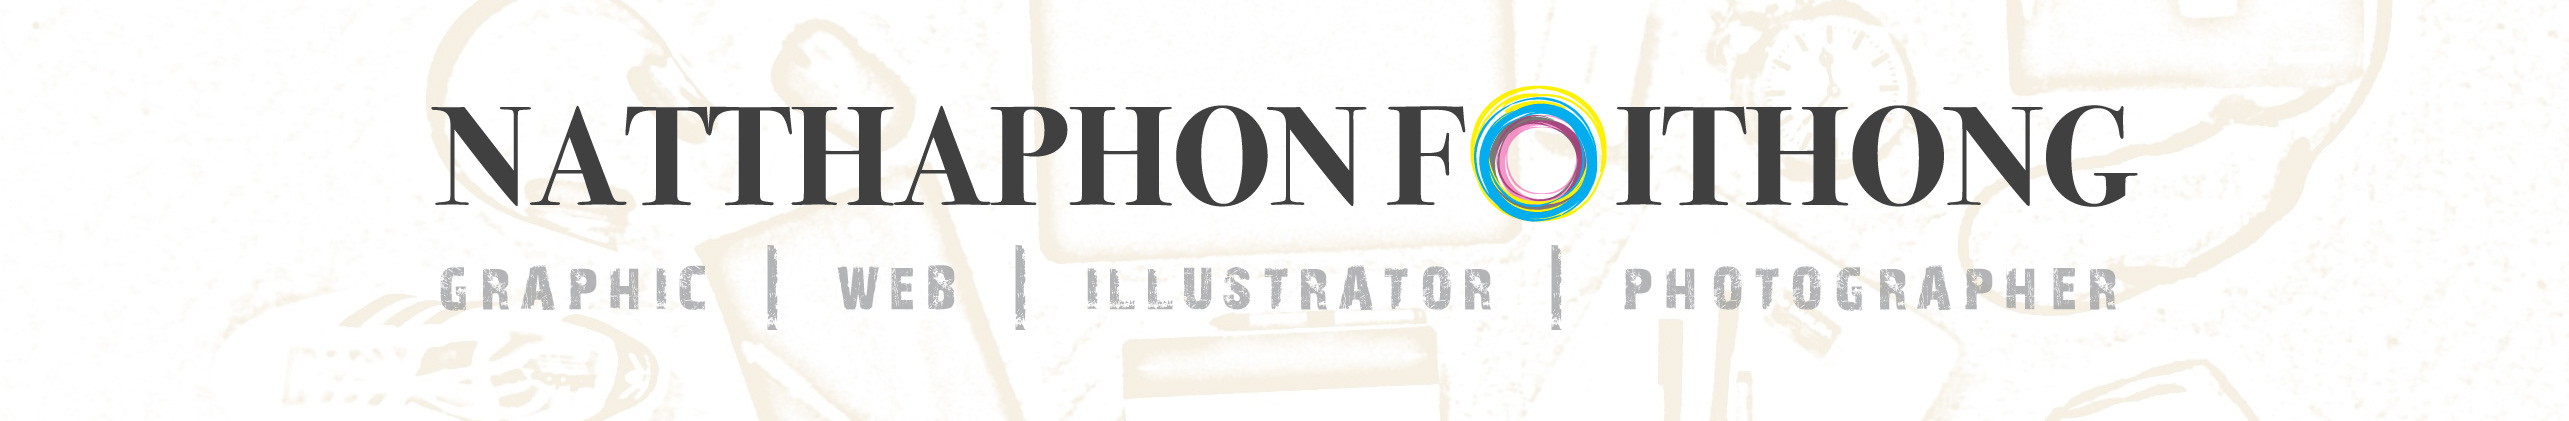 Natthaphon Foithong's profile banner